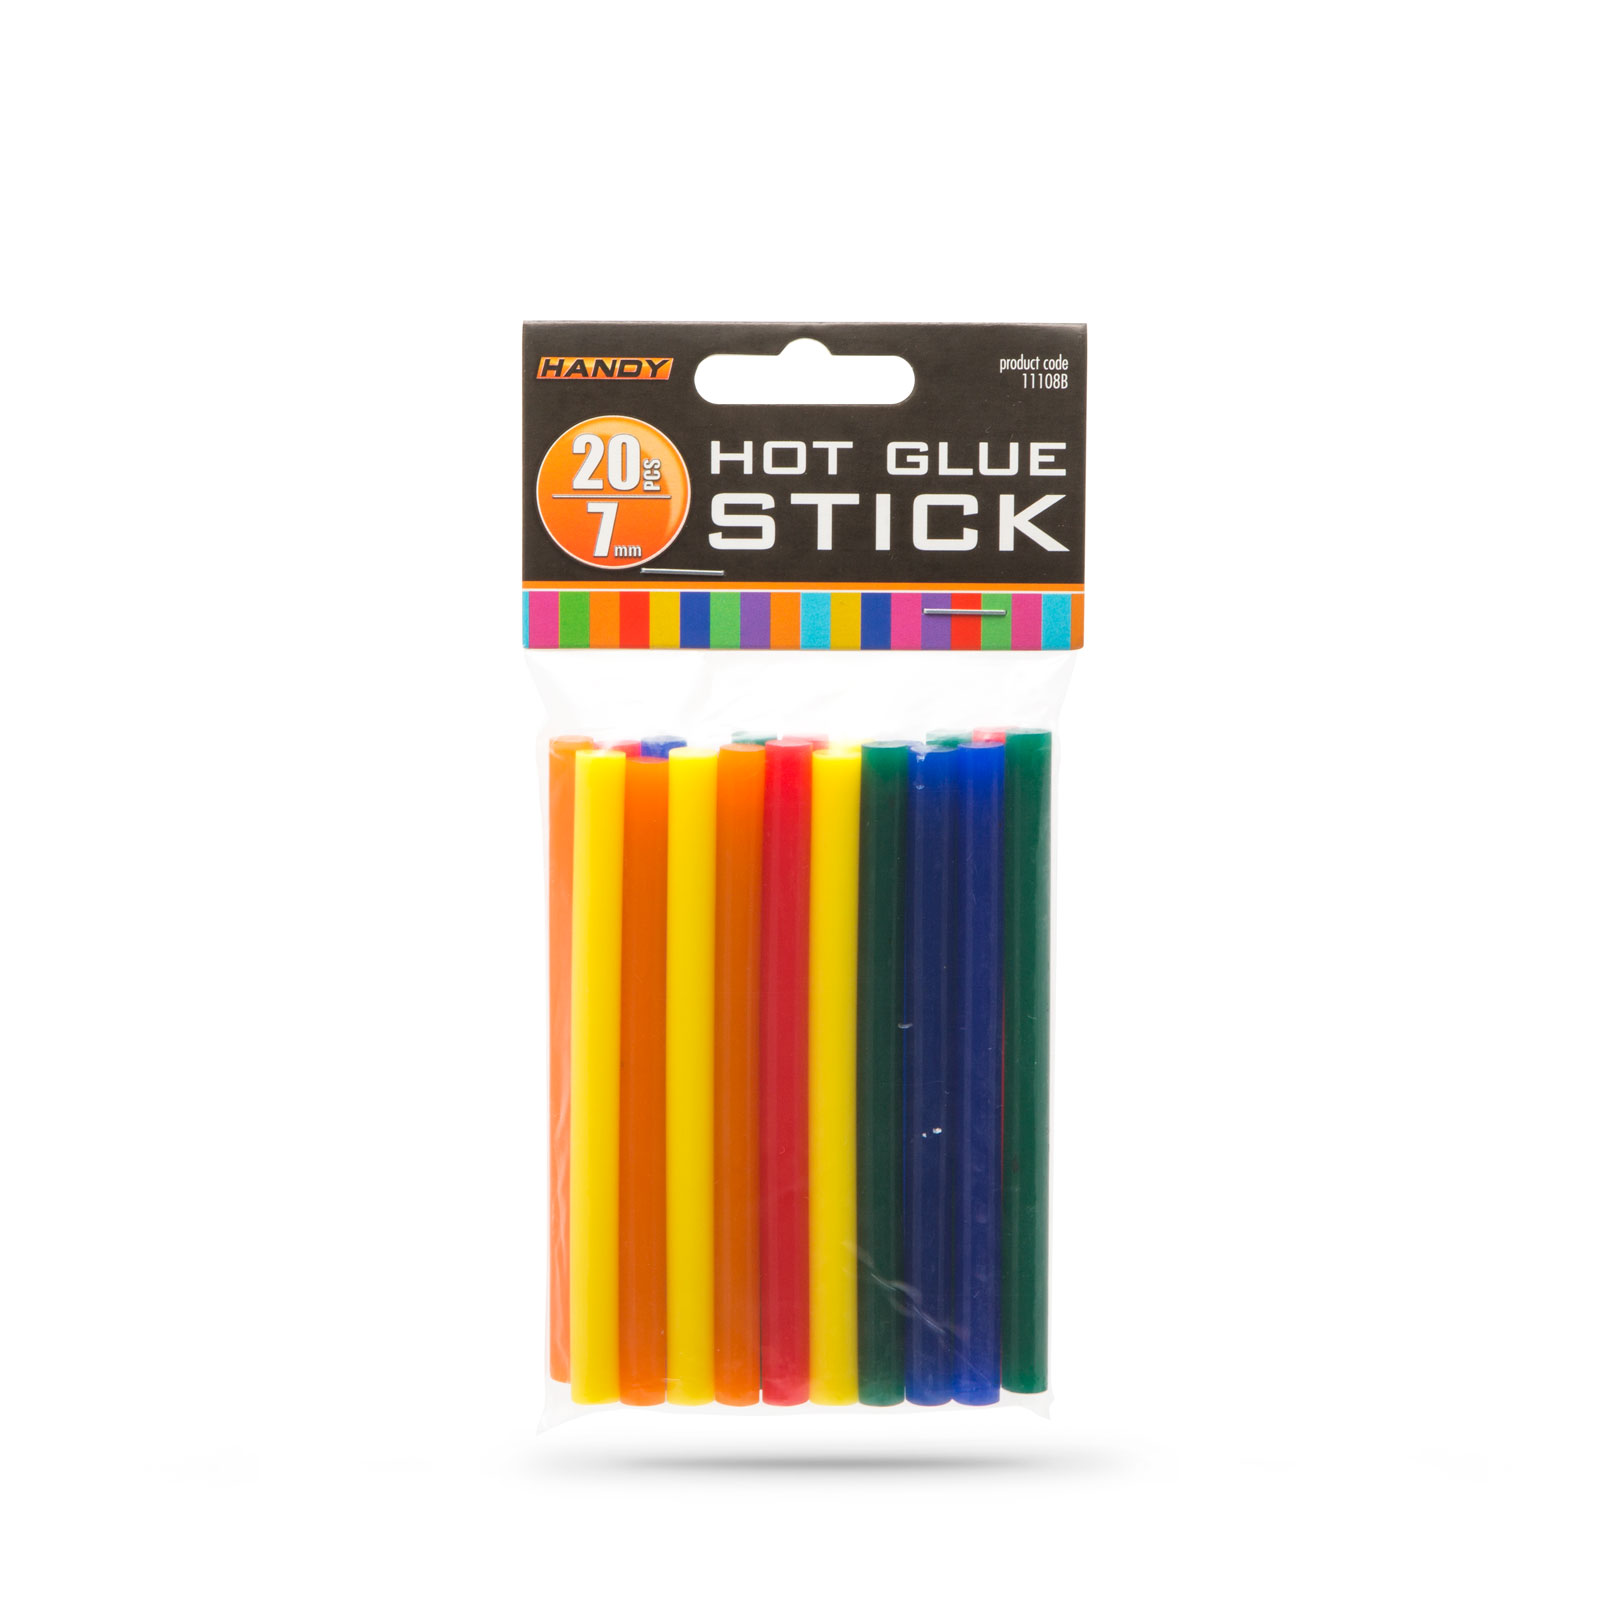 Hot glue stick - 7 mm - colorful thumb